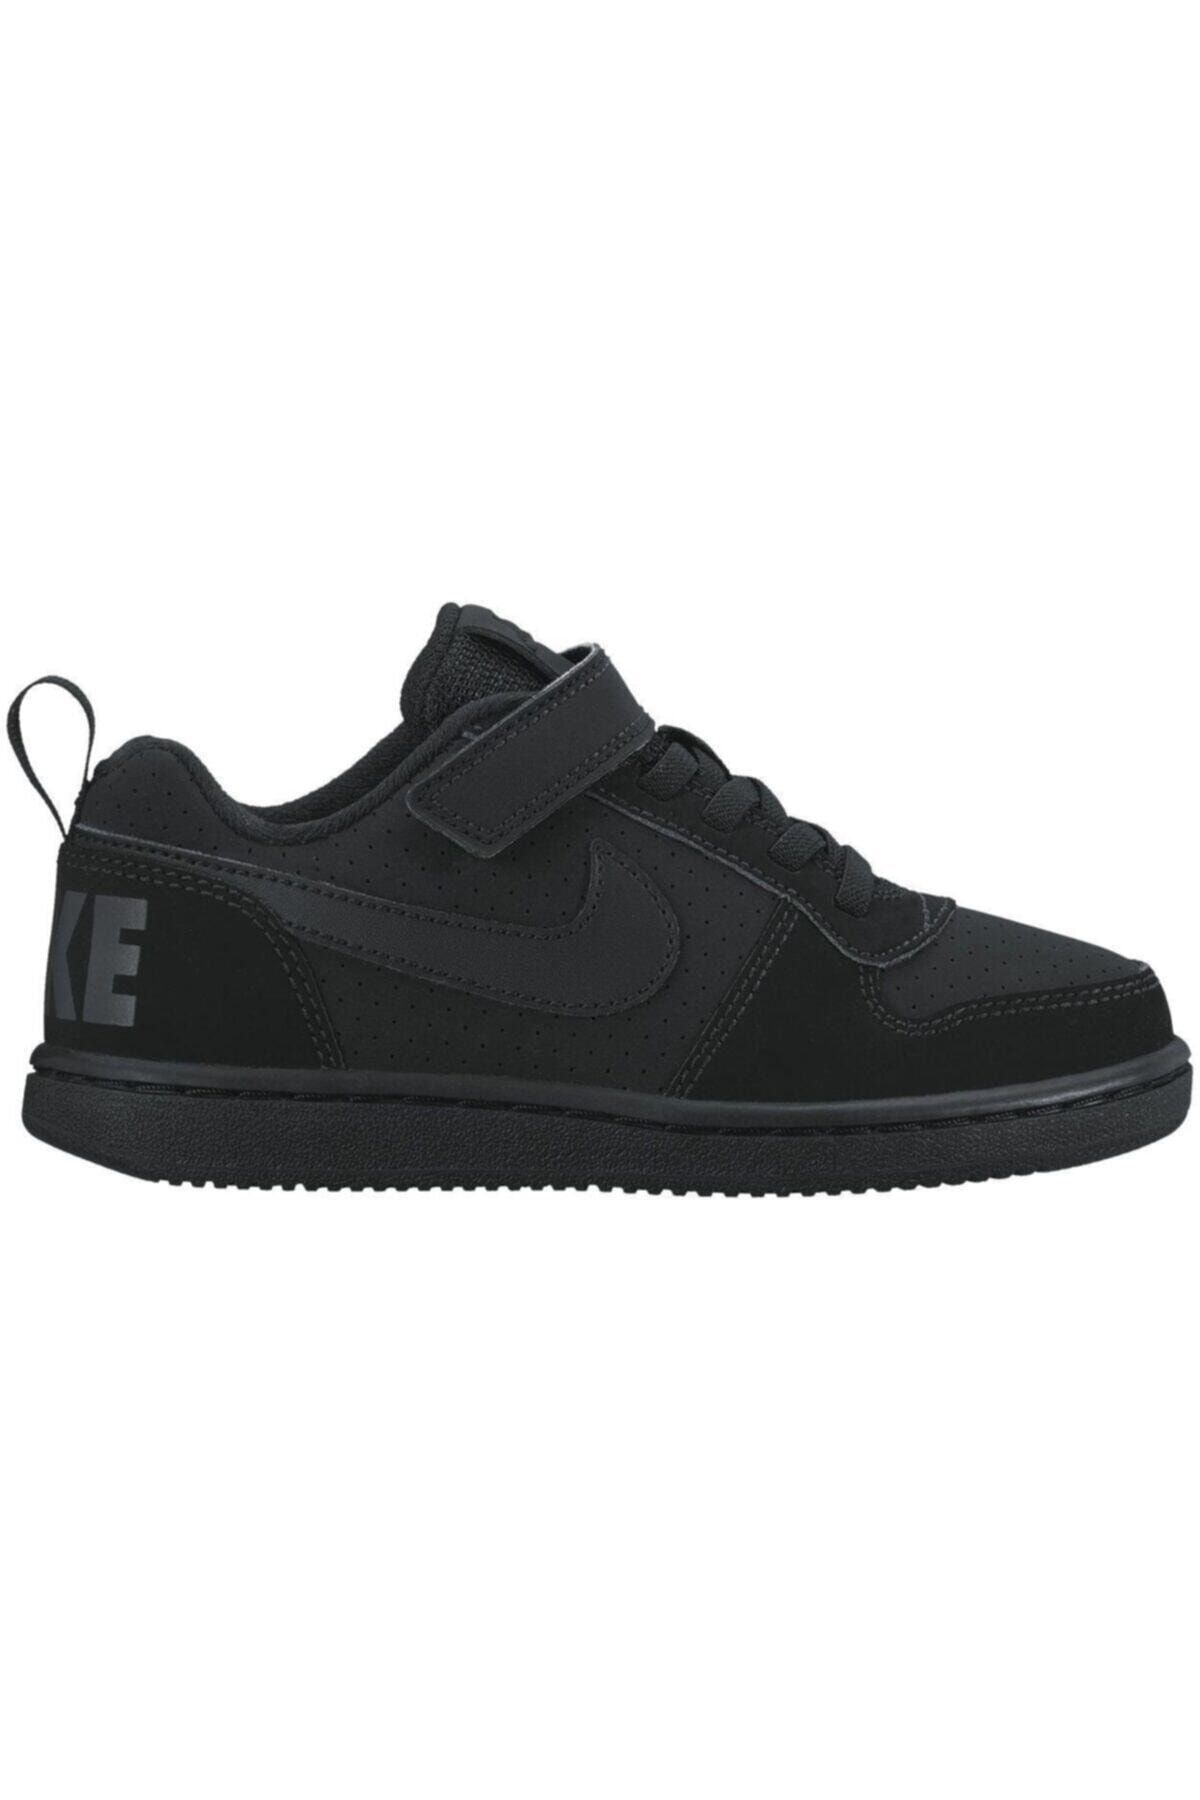 Nike 870025-001 Court Borough Lo(Psv) Çocuk Ayakkabısı